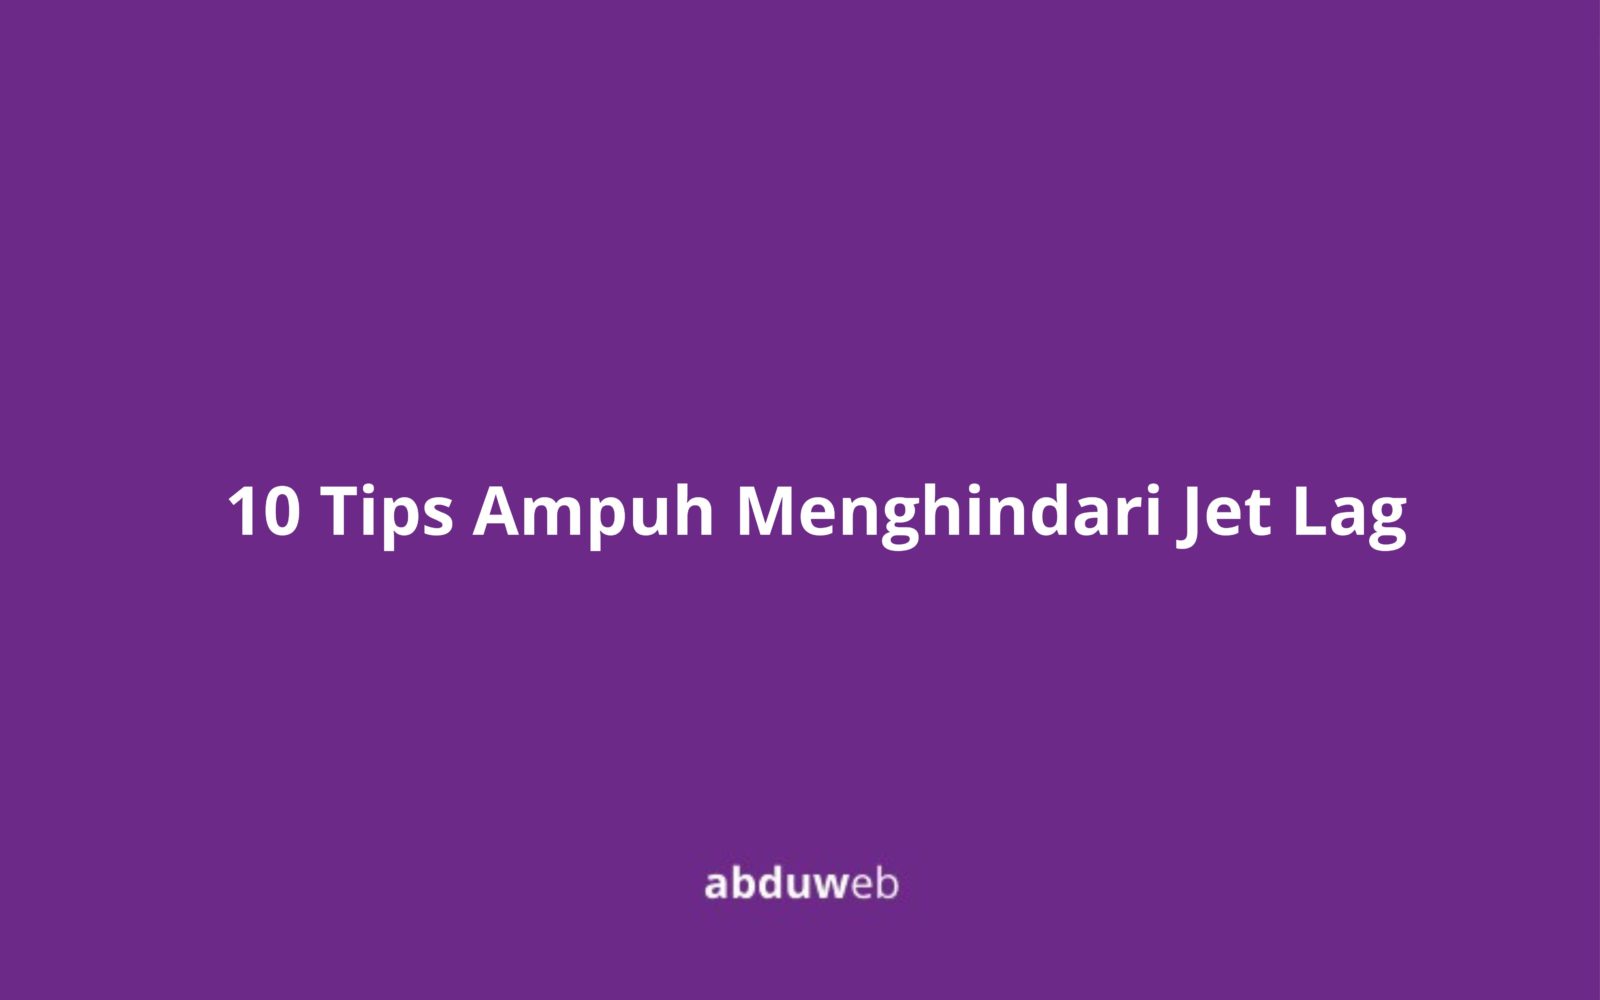 10 Tips Ampuh Menghindari Jet Lag